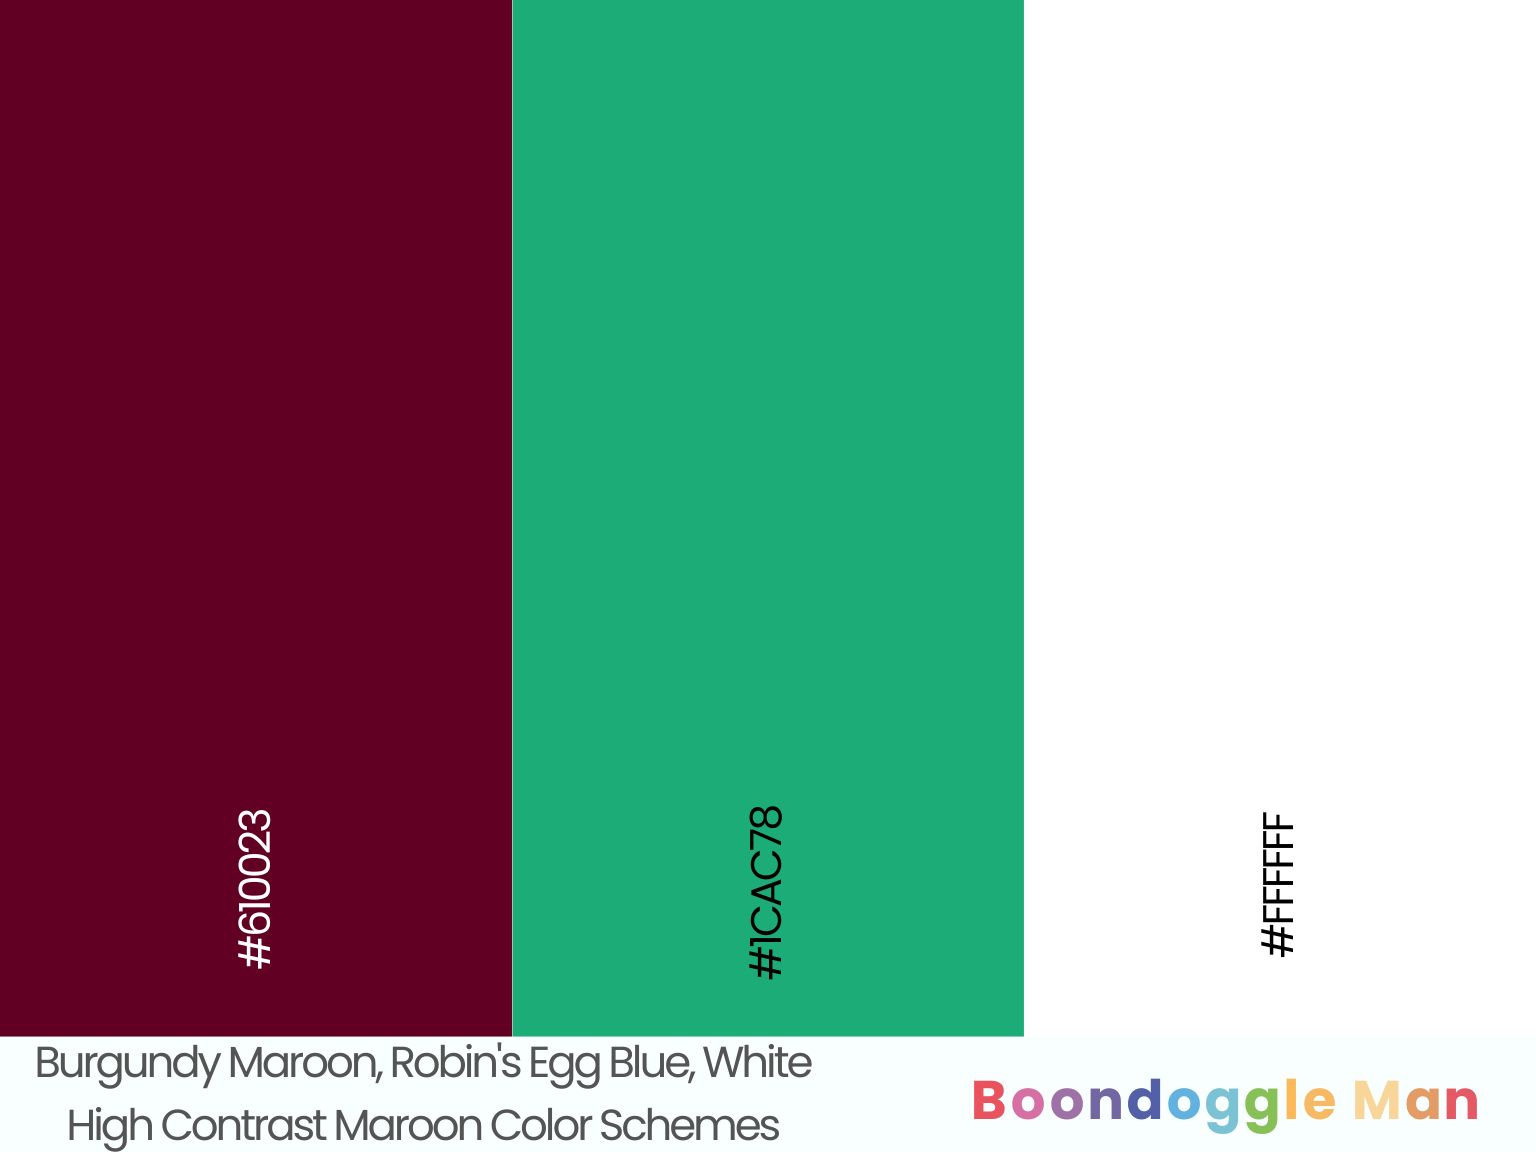 Burgundy Maroon, Robin's Egg Blue, White